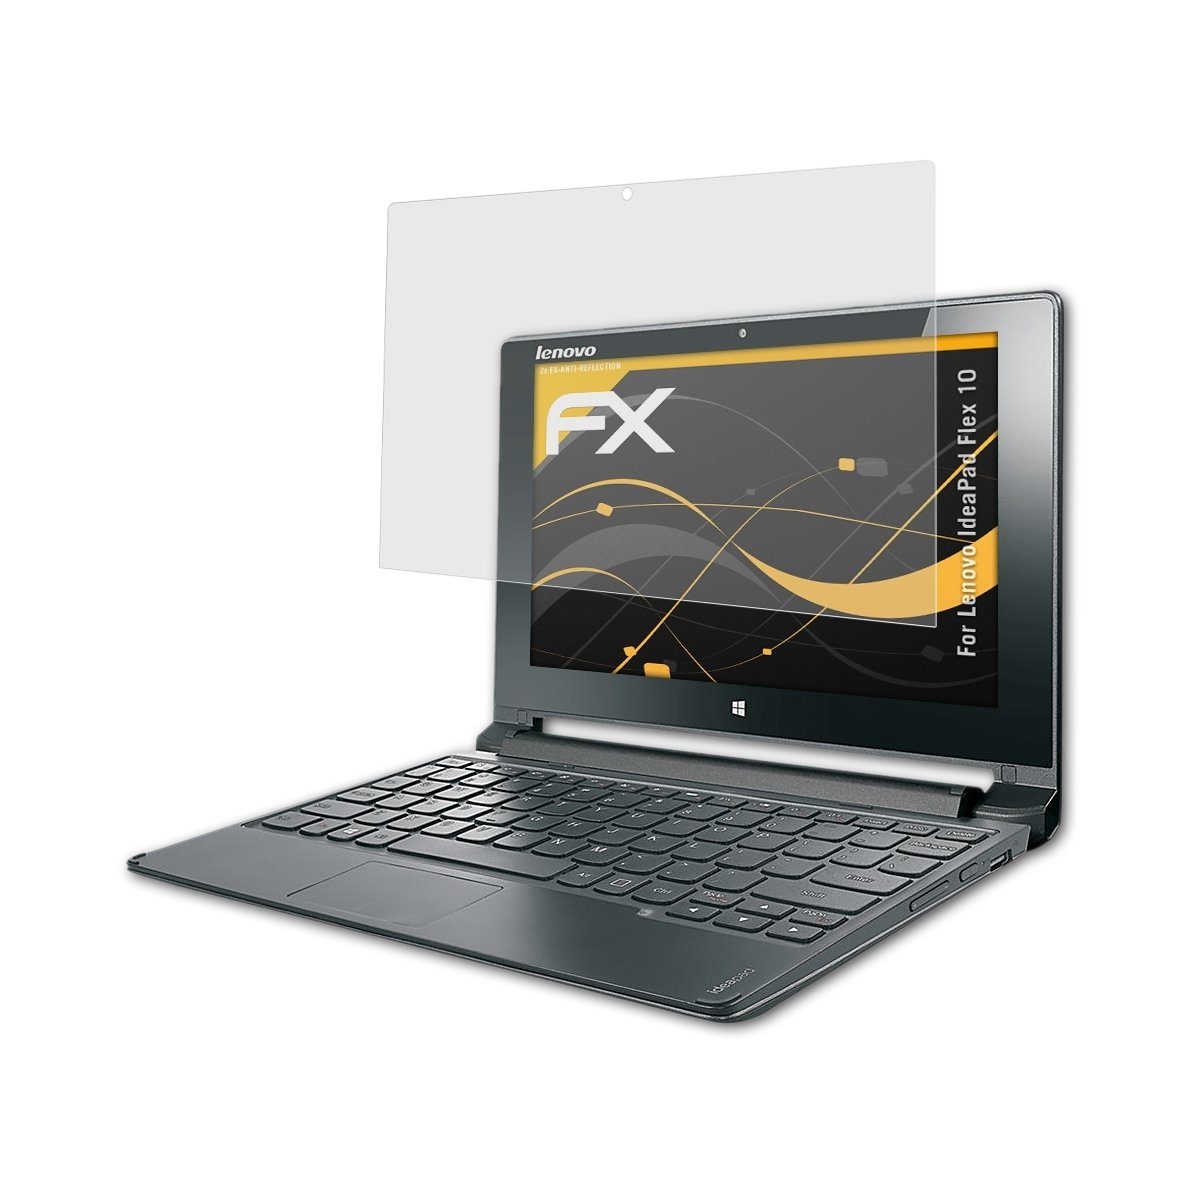 atFoliX Schutzfolie für Lenovo IdeaPad Flex 10, (2 Folien), Entspiegelnd und stoßdämpfend